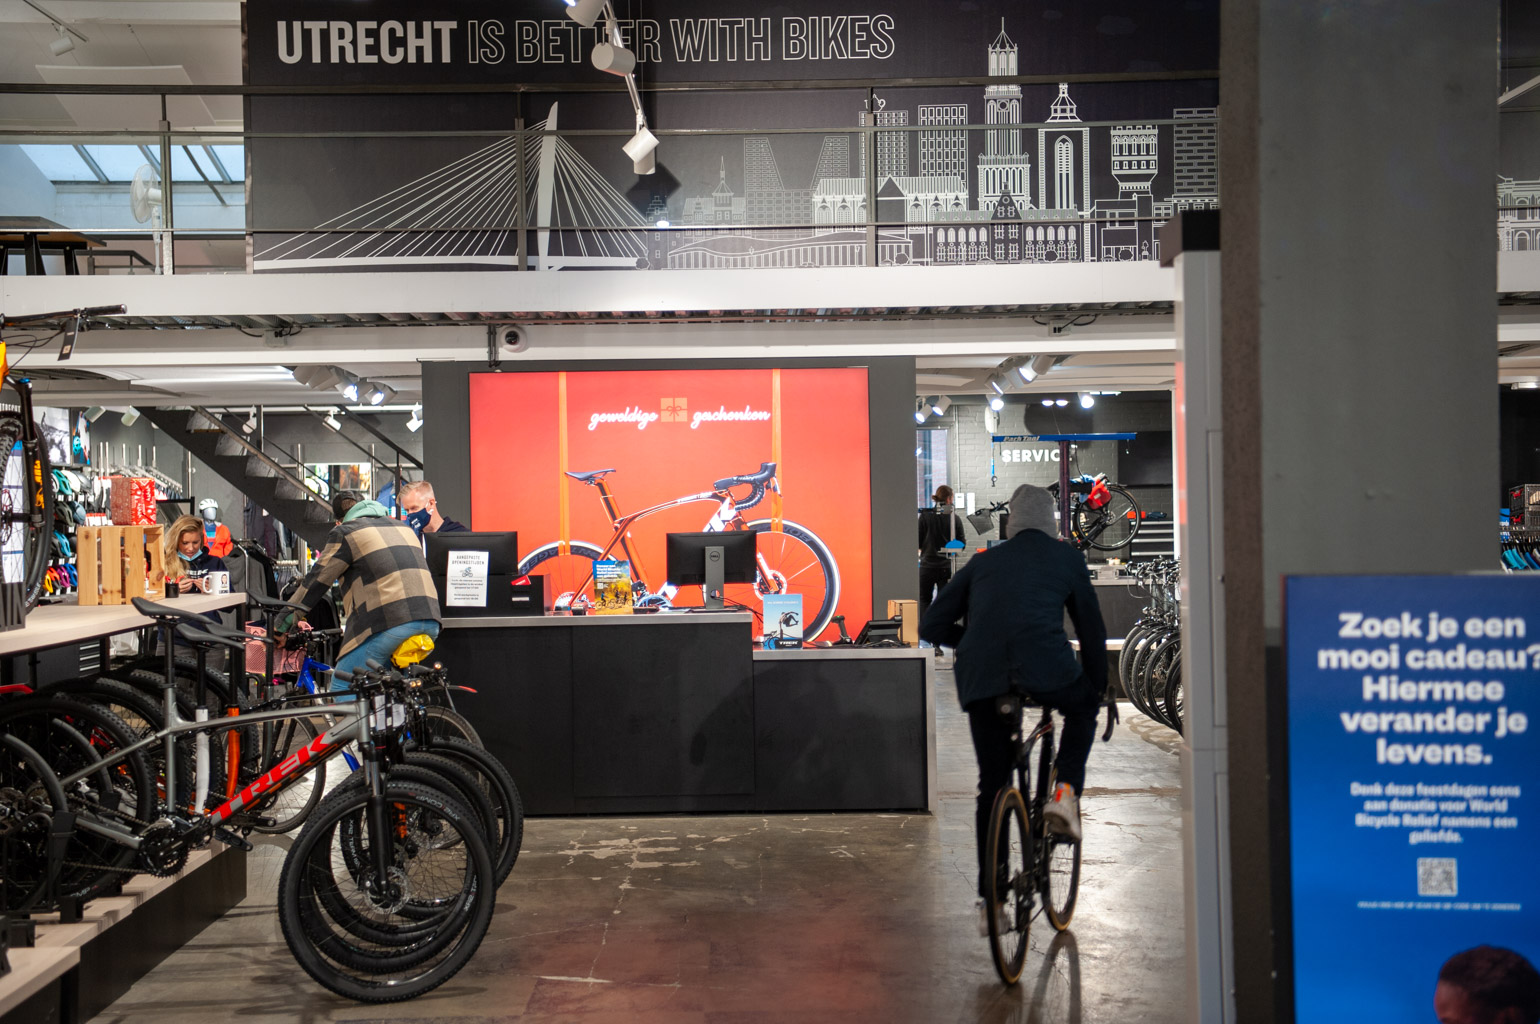 doos Herdenkings Verkeersopstopping Op bezoek bij Trek Bicycle Store Utrecht - Racefietsblog.nl